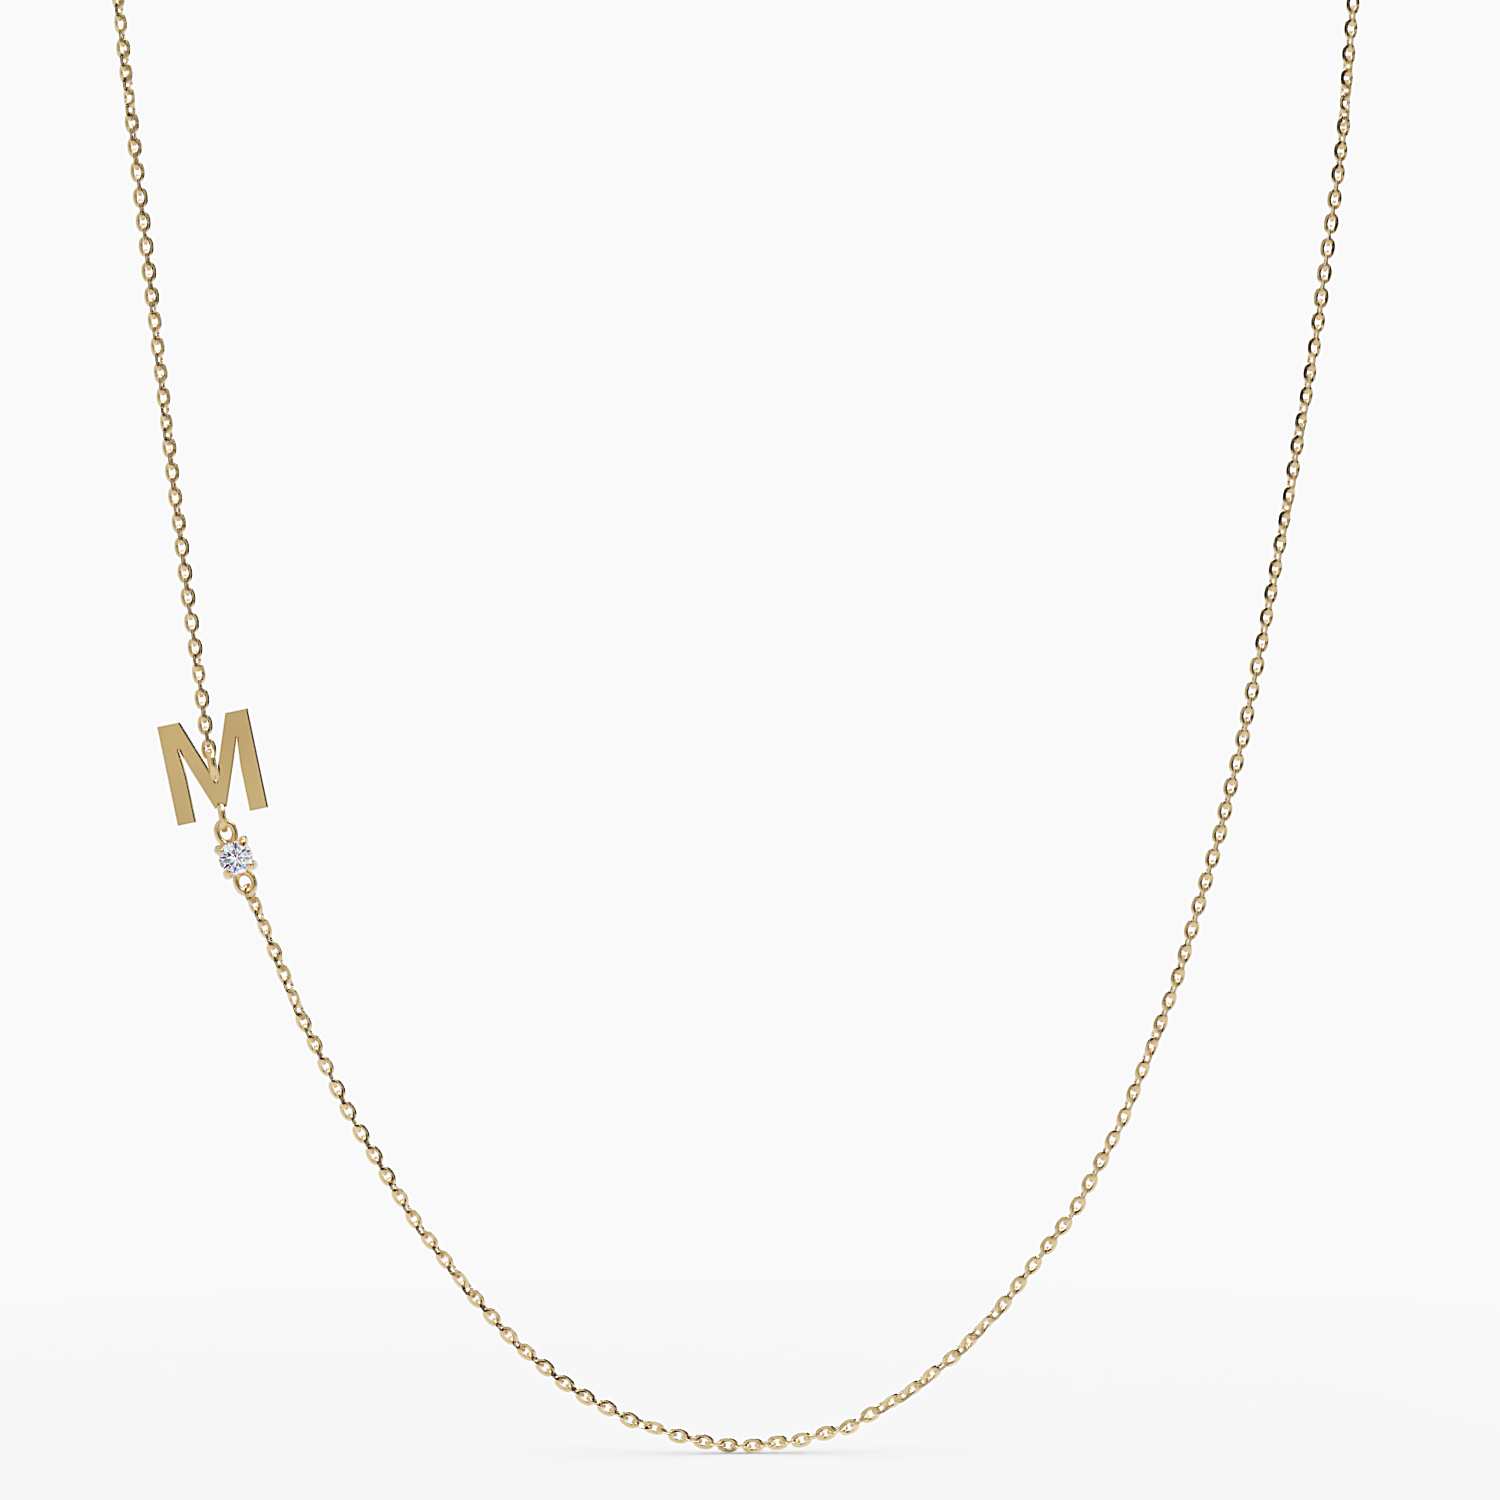 Sideways Initial M Necklace with Diamond